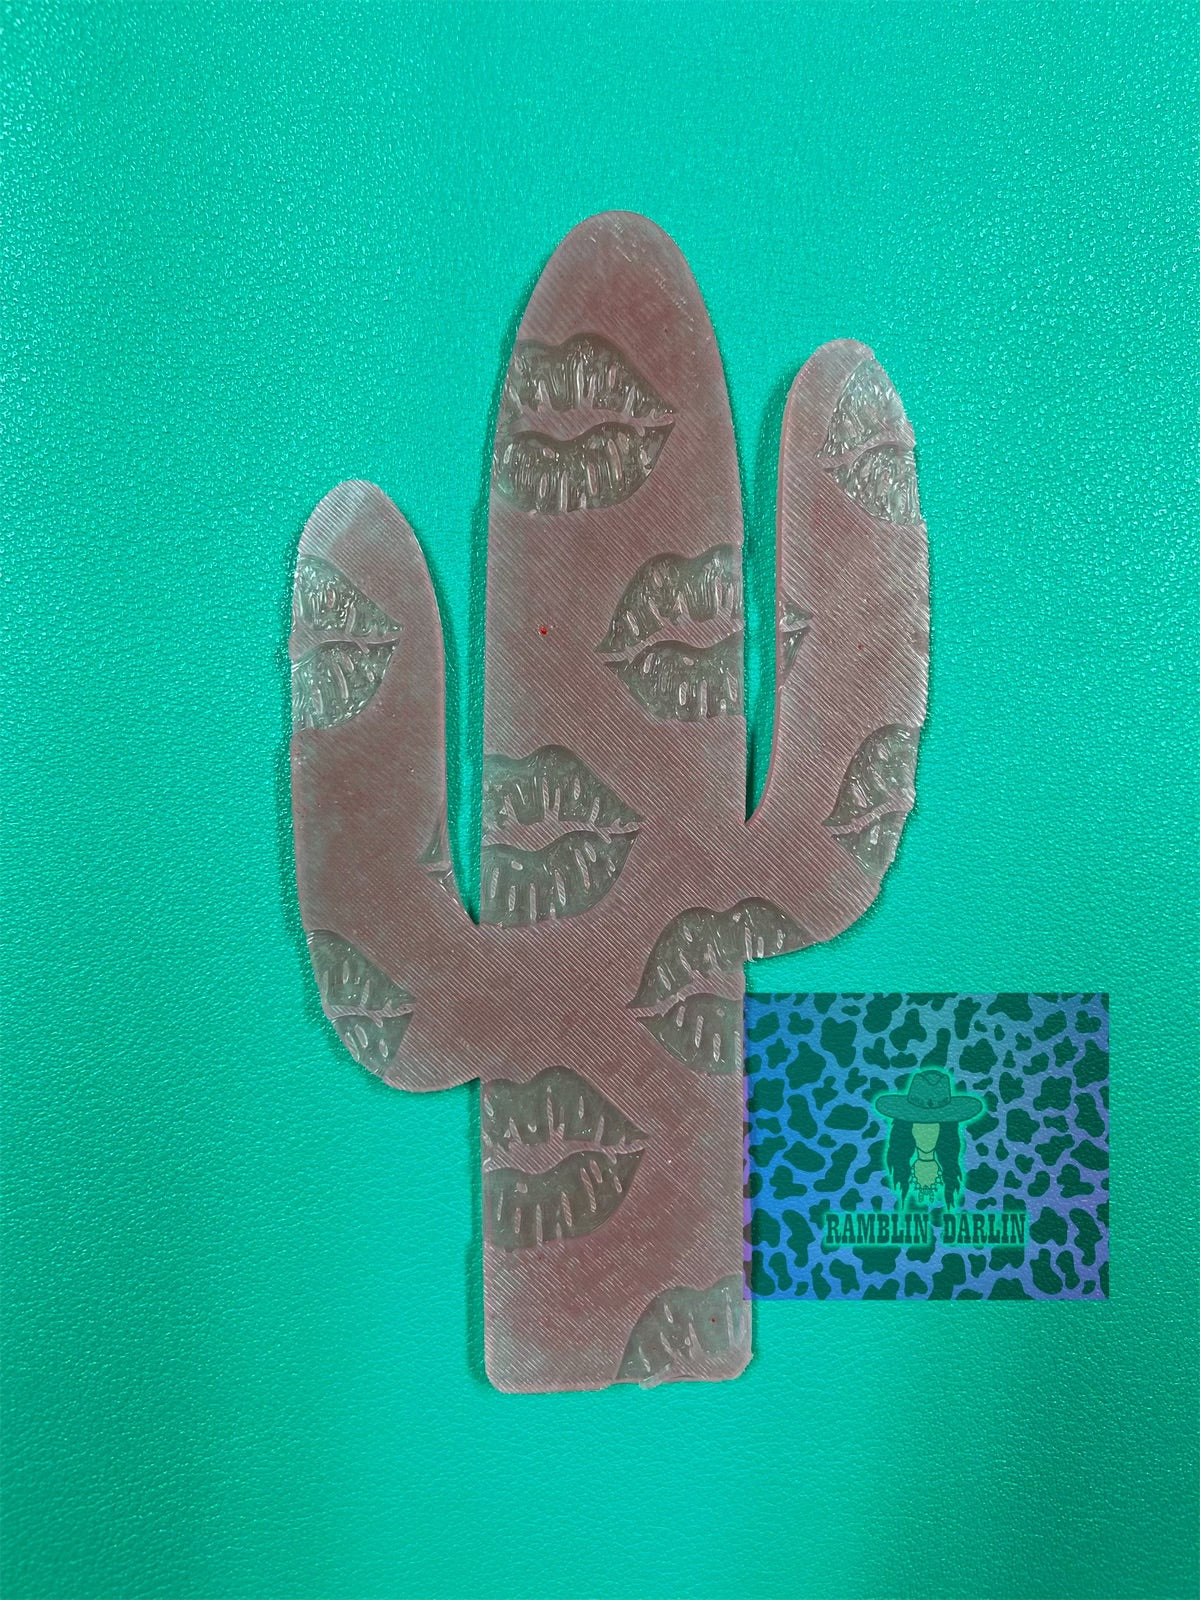 Cactus Insert Molds